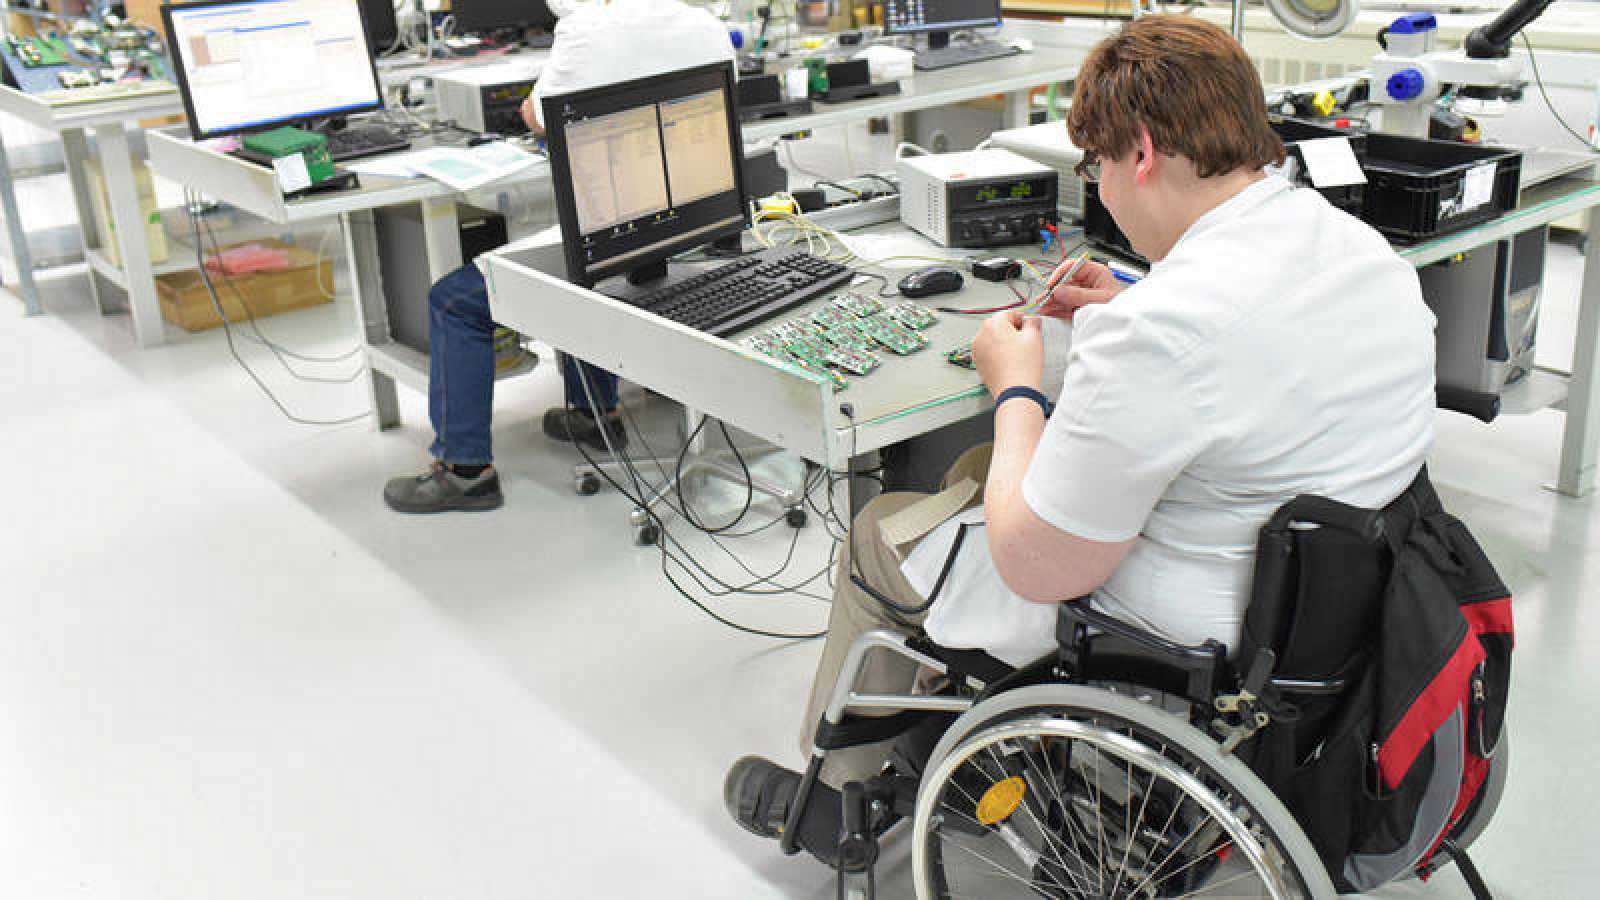 Discapacitado trabajando en una fábrica de ensamblaje de componentes electrónicos.